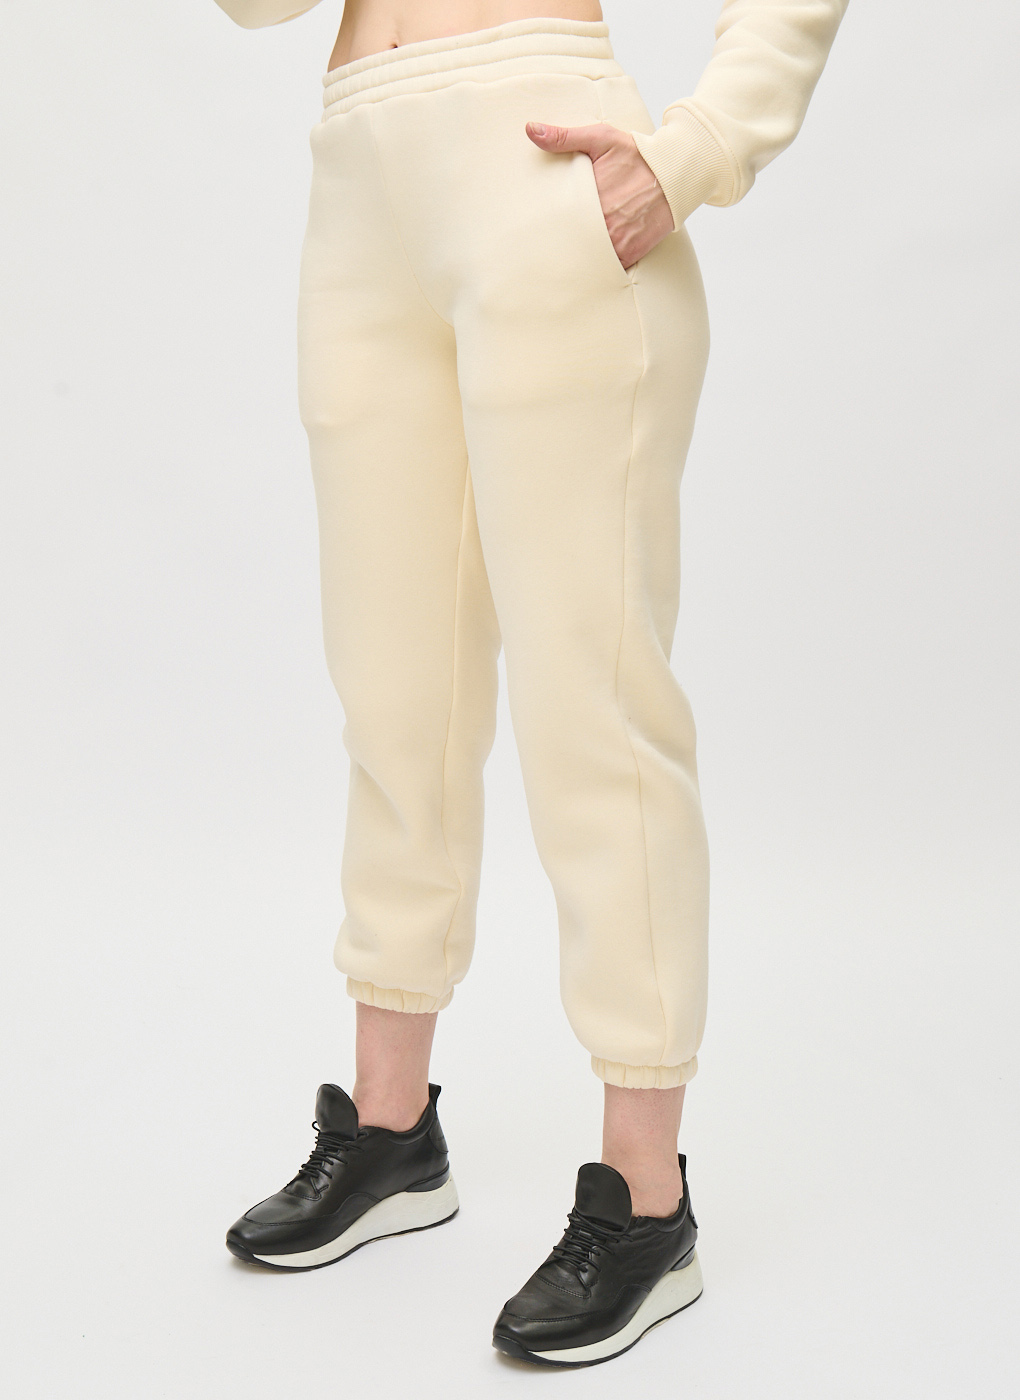 Спортивные брюки женские TANINI 64645 белые 50 RU